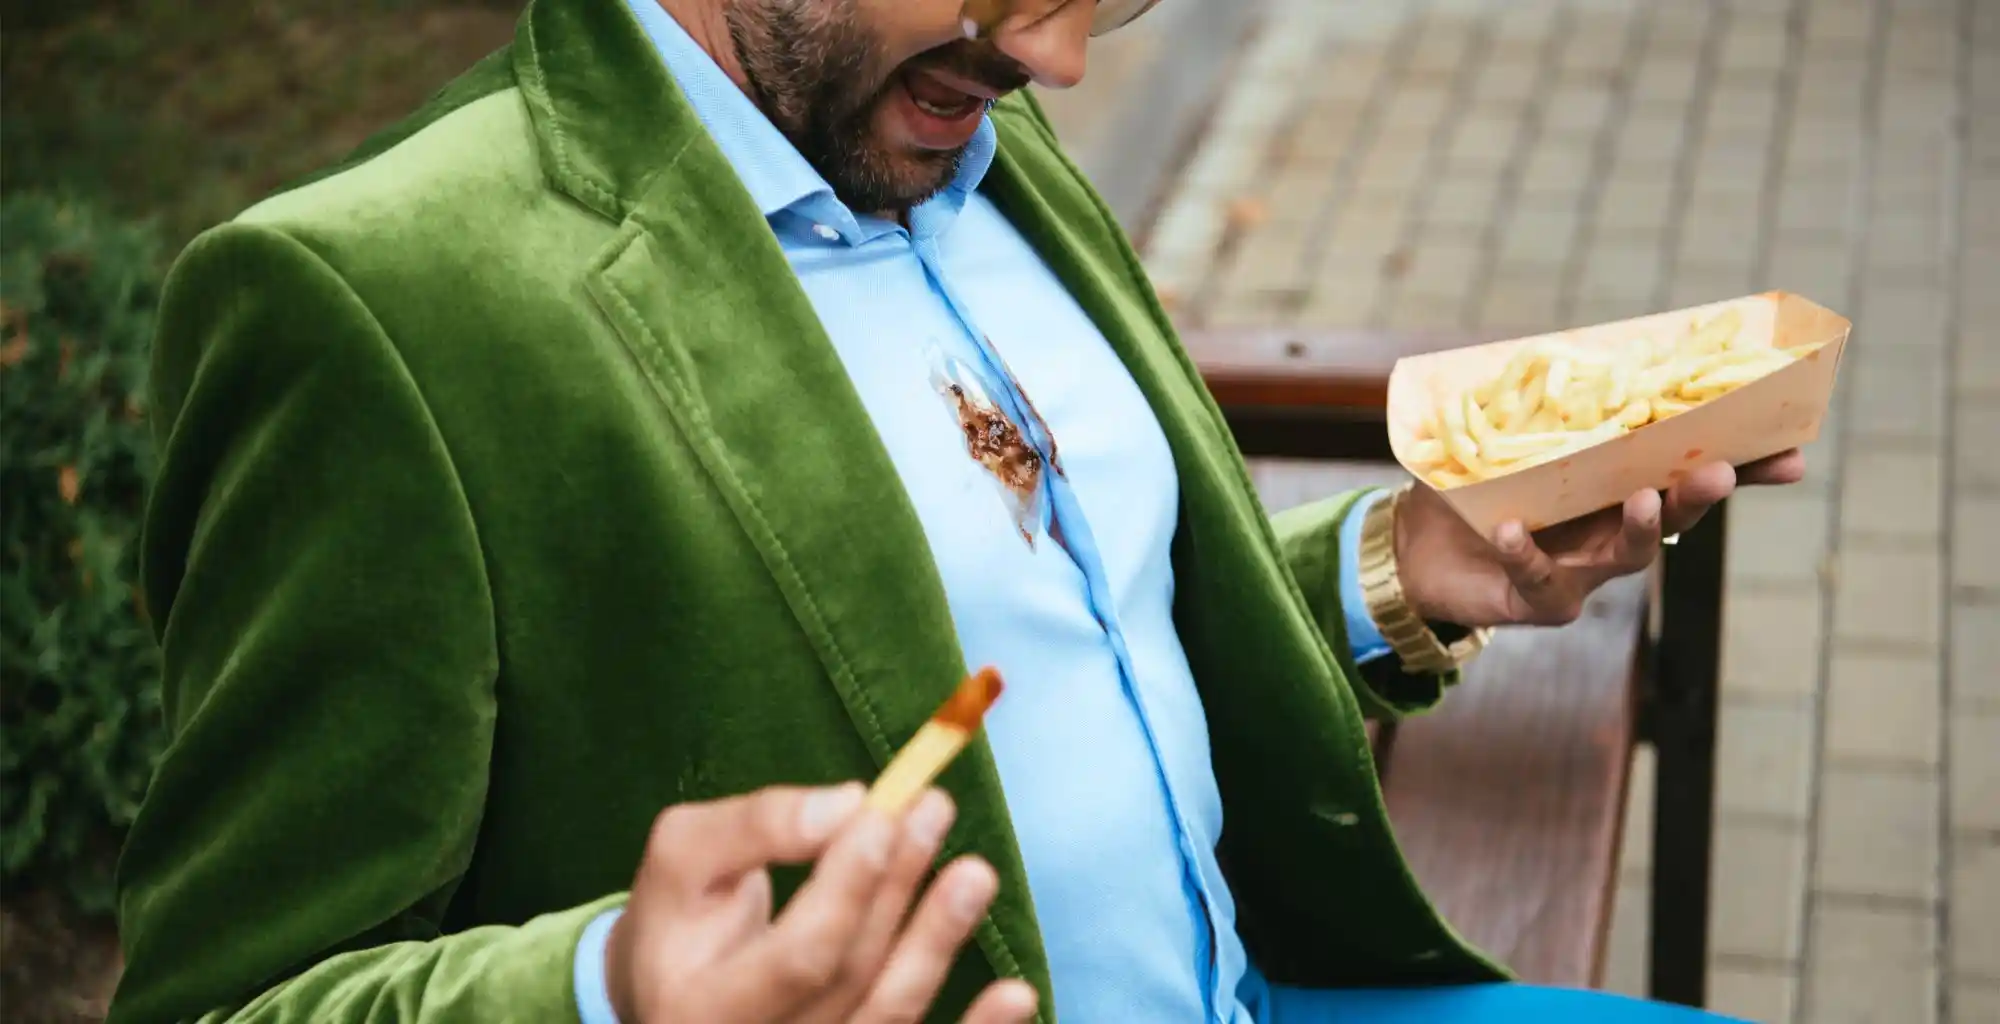 Un hombre, vestido de forma elegante con una mancha de kétchup en su camisa, sostiene unas papas fritas sentado en un banco en la calle